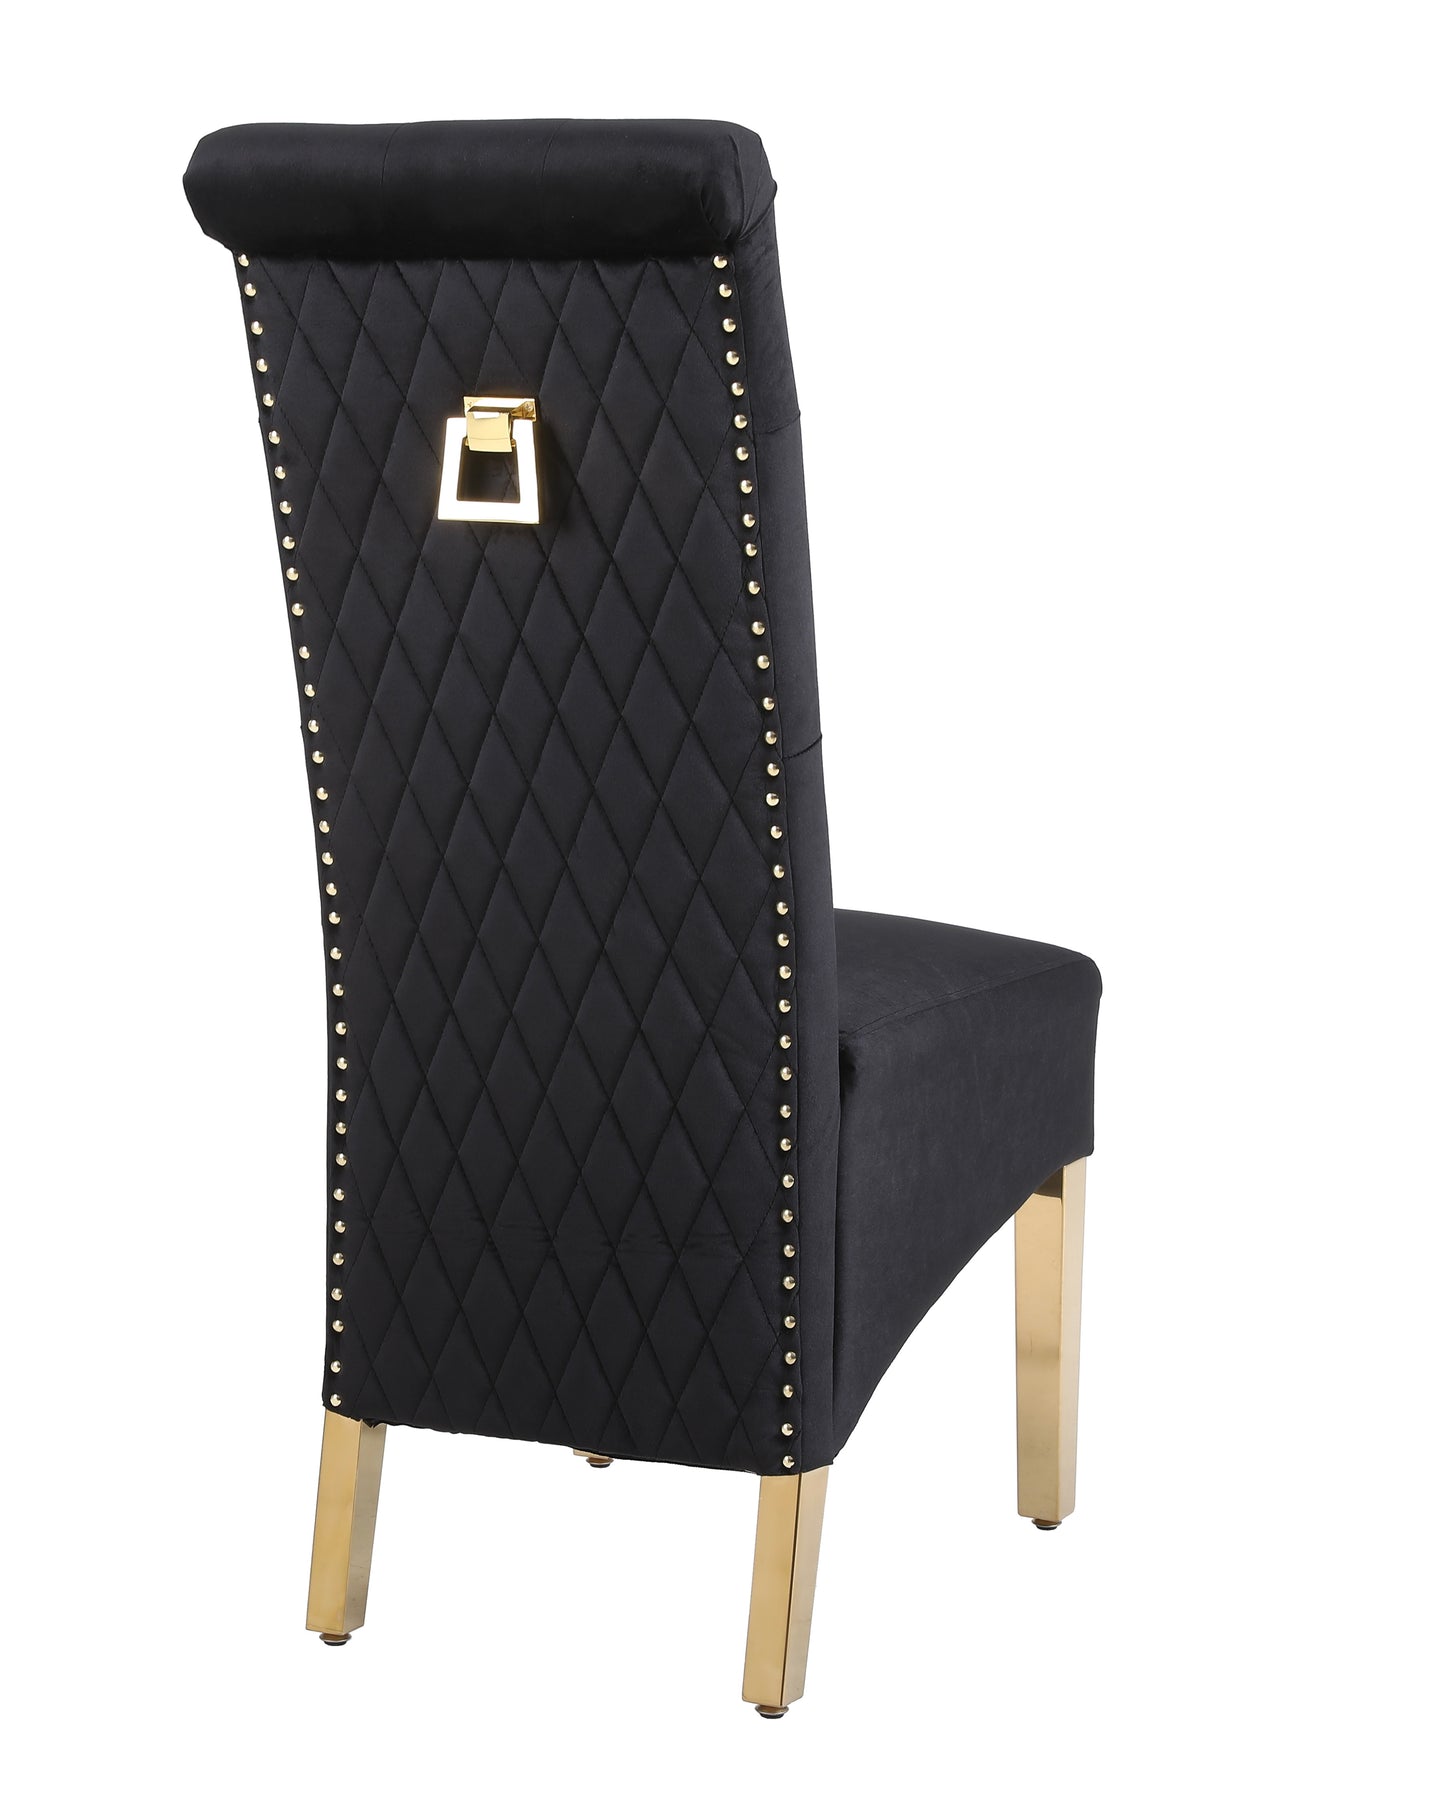 X2 Velvet High Back Dining Chairs with Golden Chrome Knocker & Legs